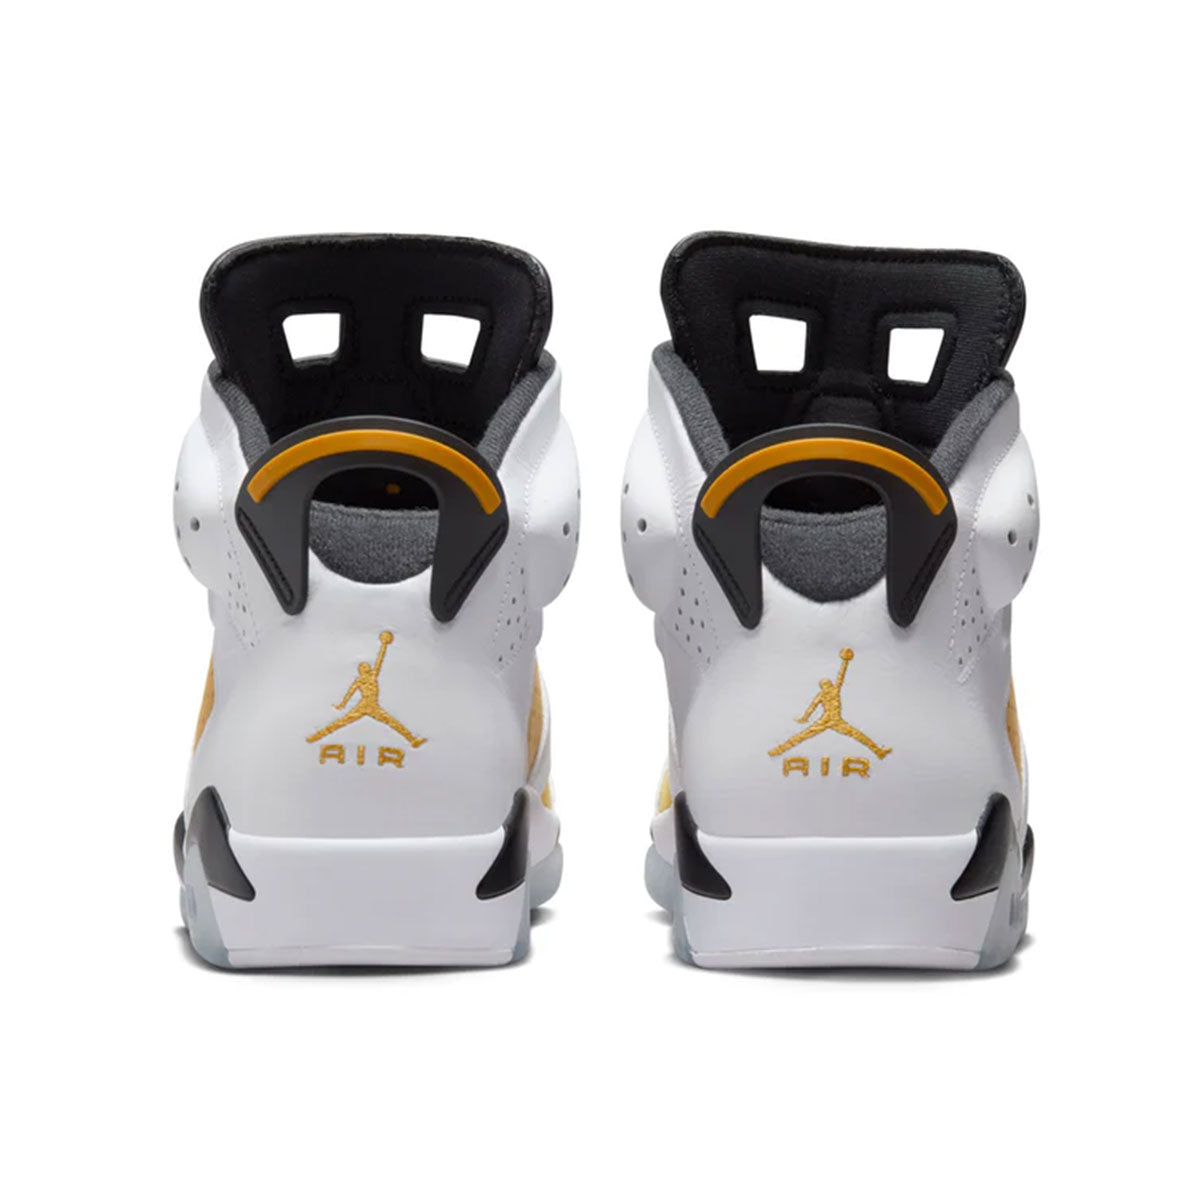 NIKE AIR JORDAN 6 RETRO (白/黃赭黑) Nike Air Jordan 6 Retro 「黃赭石」 [CT8529-170]